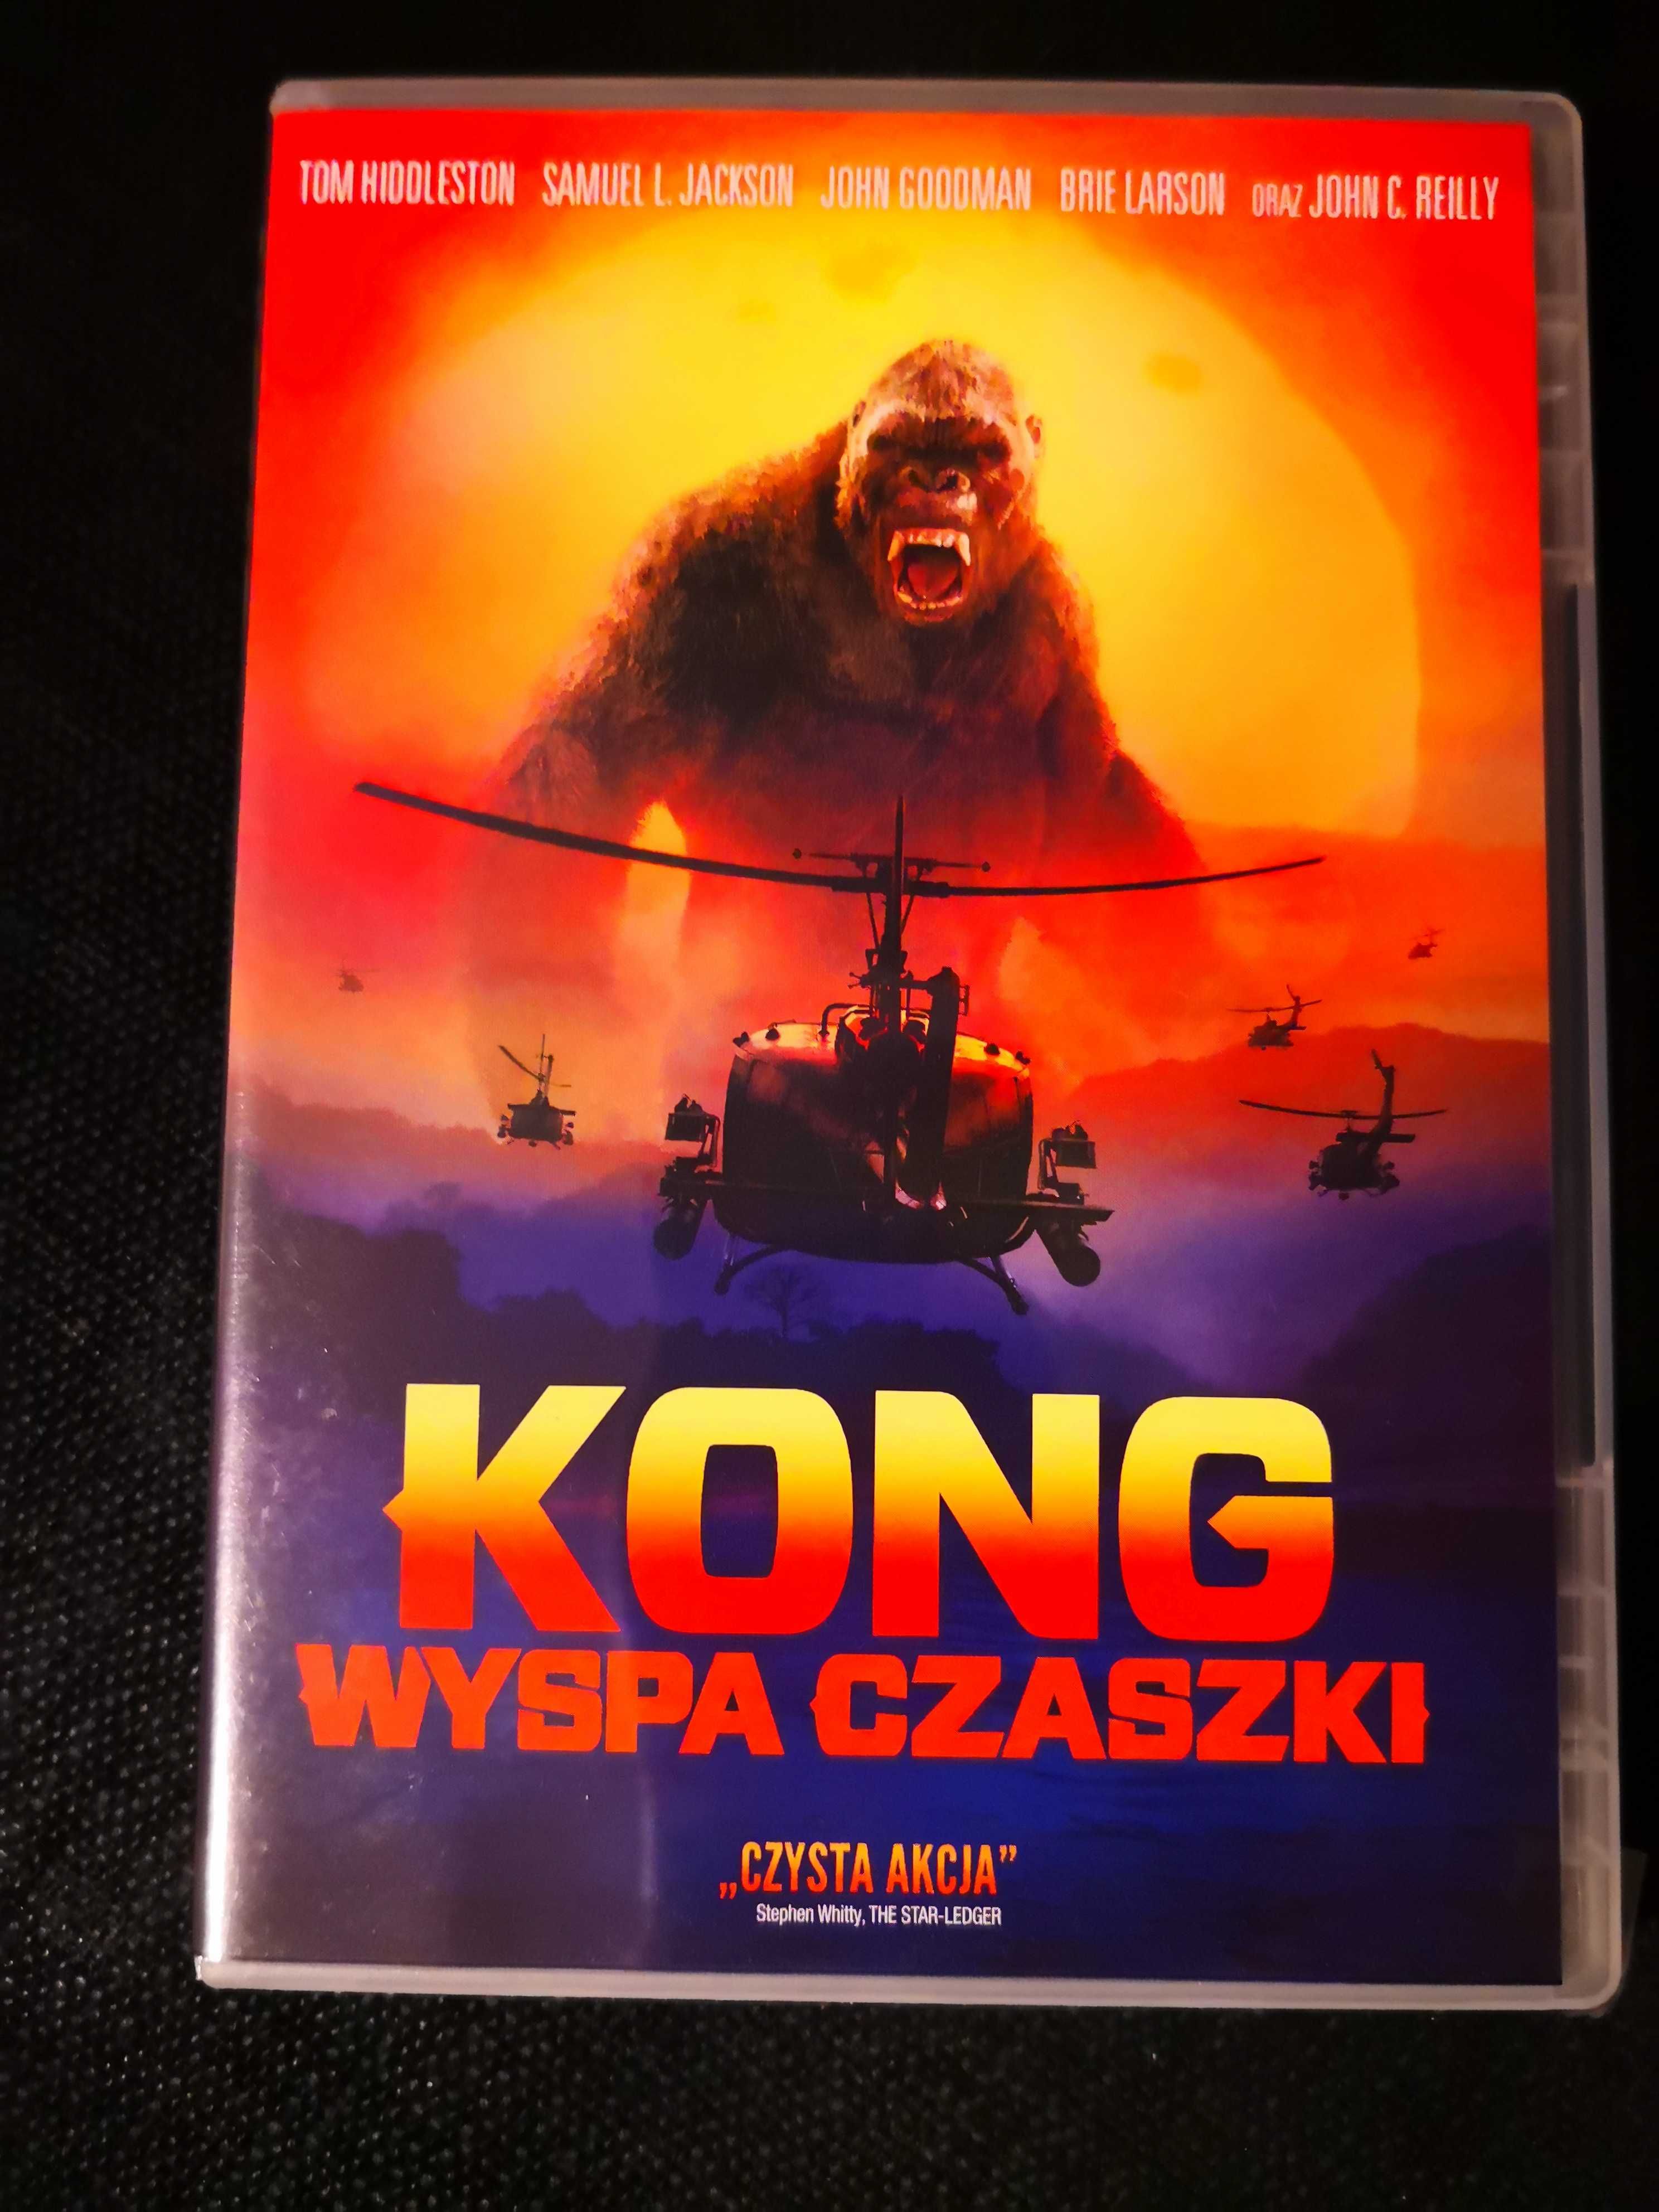 KONG: Wyspa Czaszki DVD